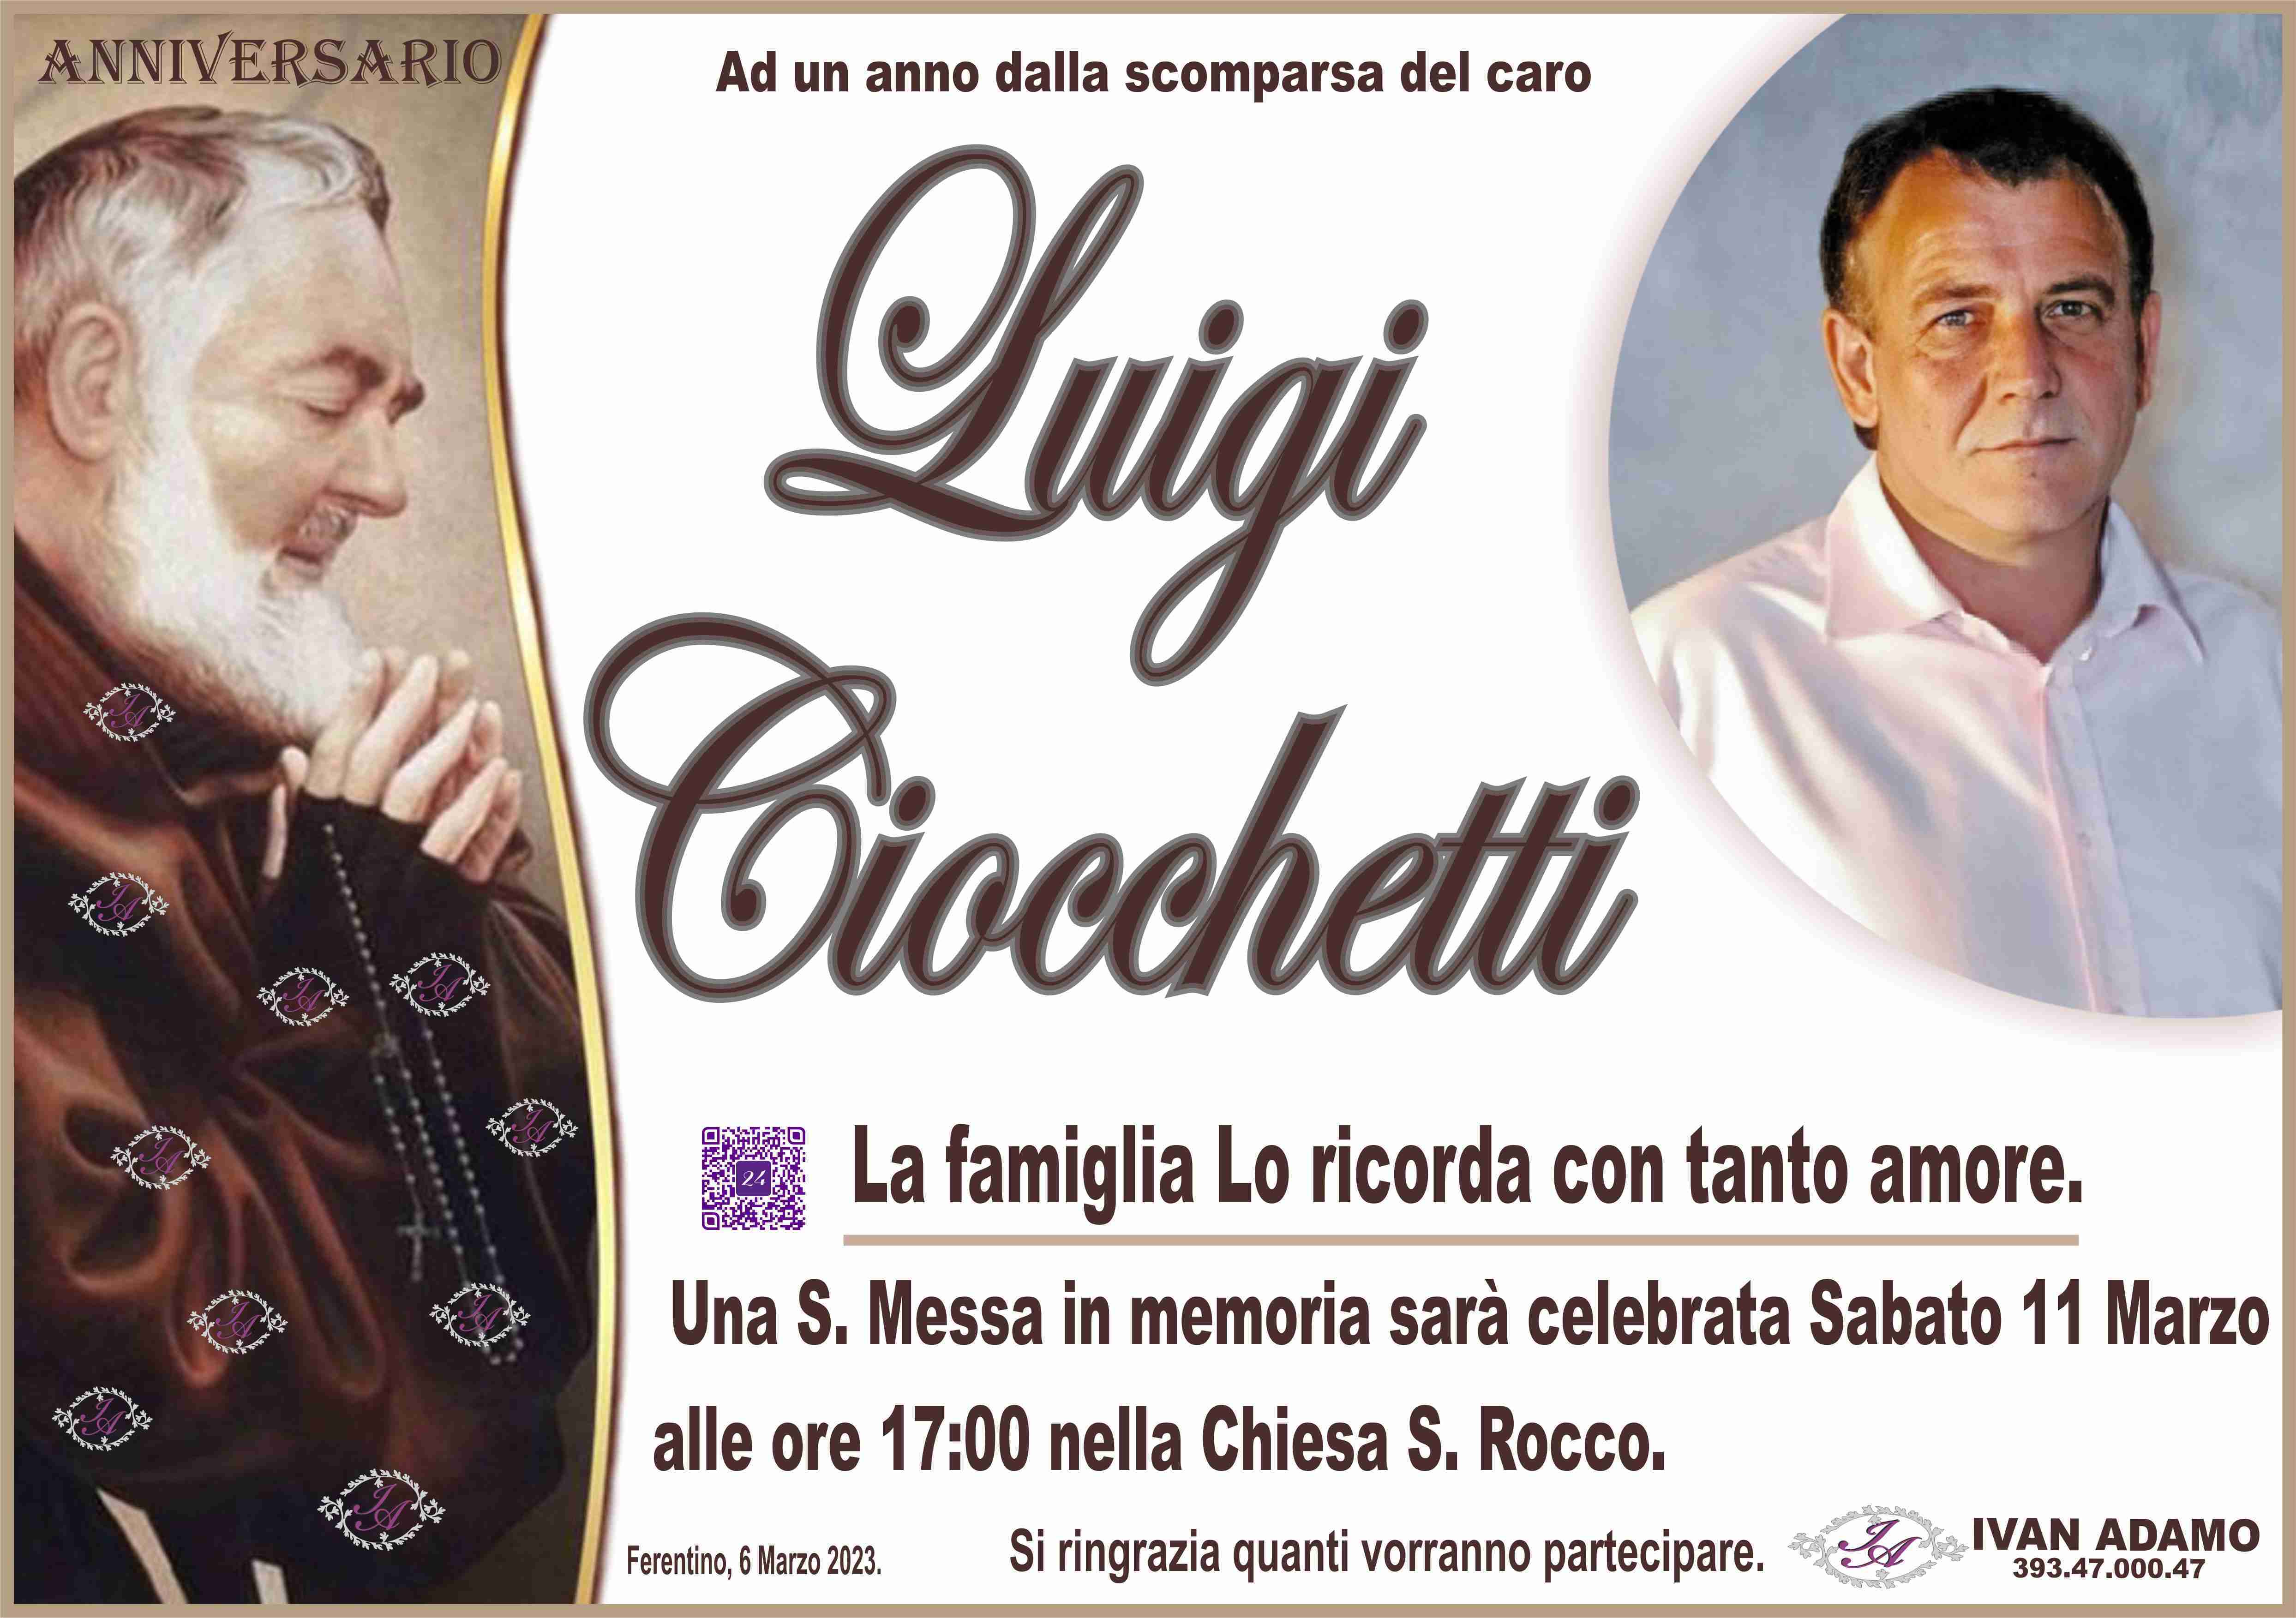 Luigi Ciocchetti